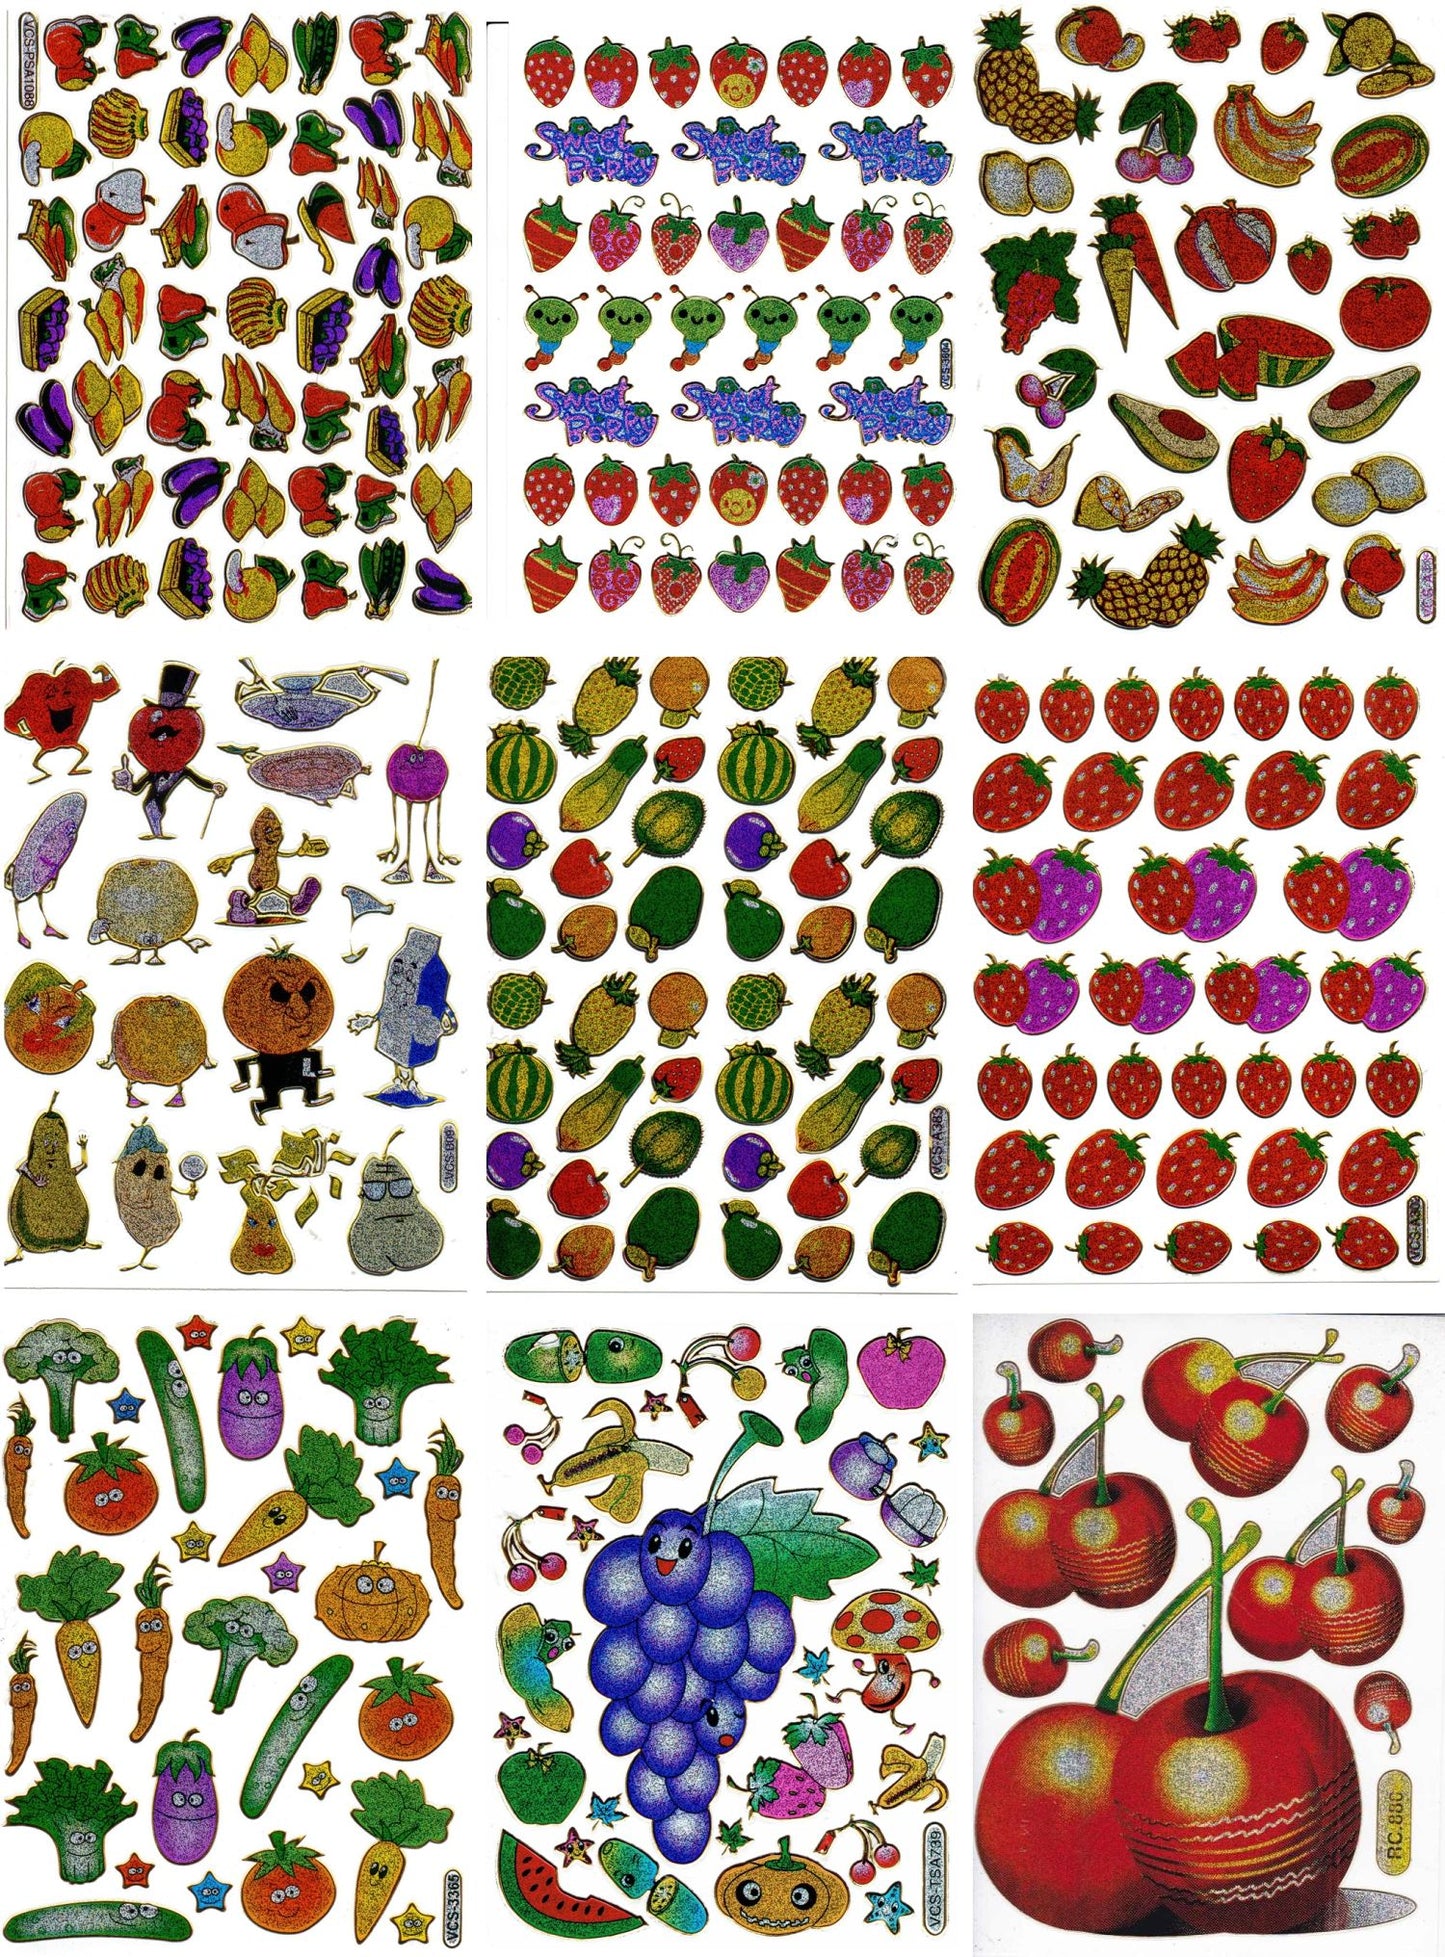 Kreatives Sticker-Set für Kinder: 9 farbenfrohe Bogen mit fruchtigen und gemüsigen Motiven, glitzerndem Metallic-Effekt - ideal für Bastelprojekte im Kindergarten! SET26